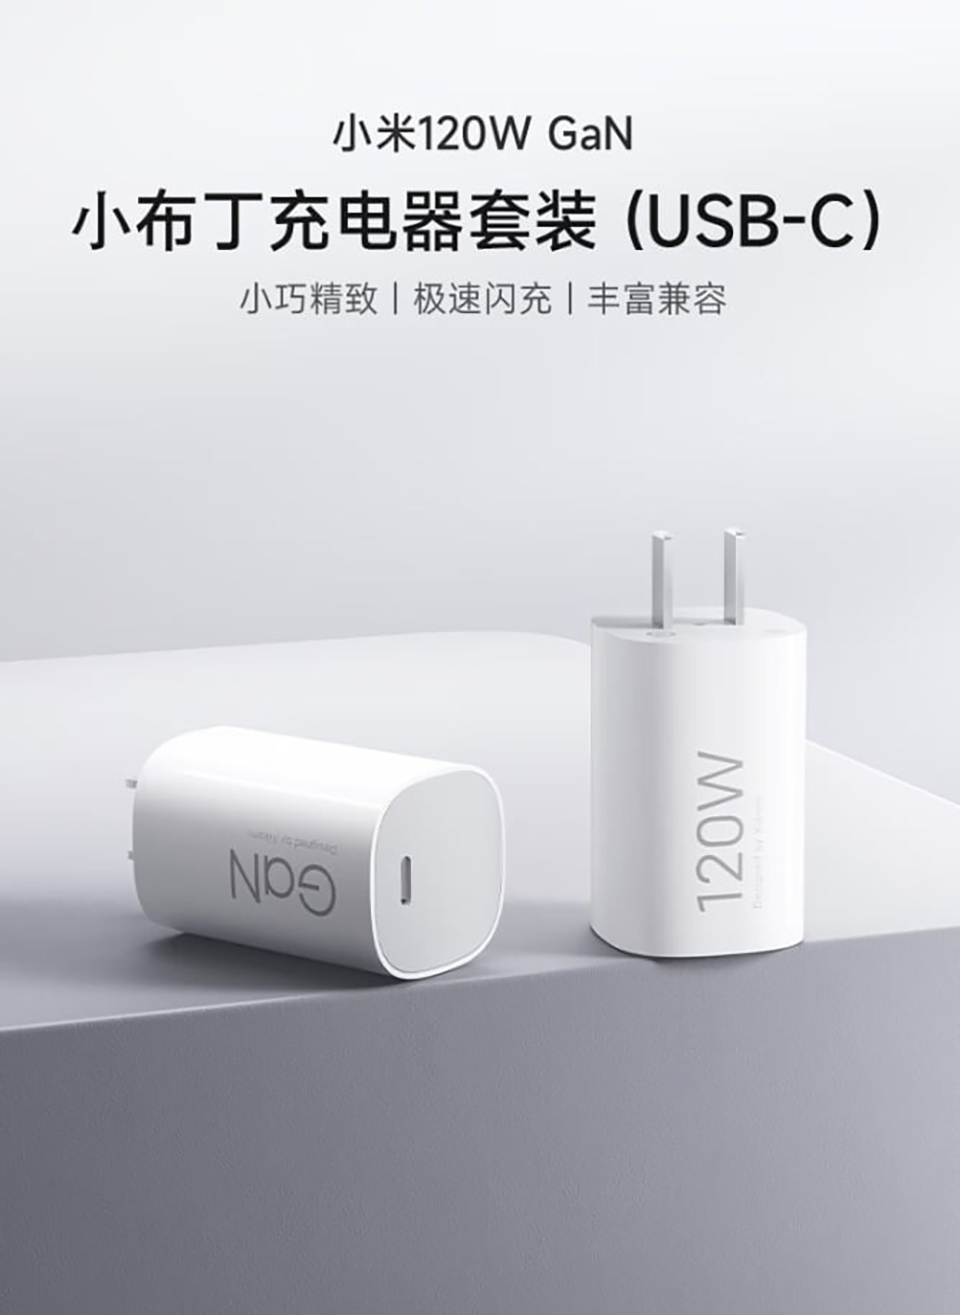 Xiaomi ra mắt của sạc GaN 120W mới